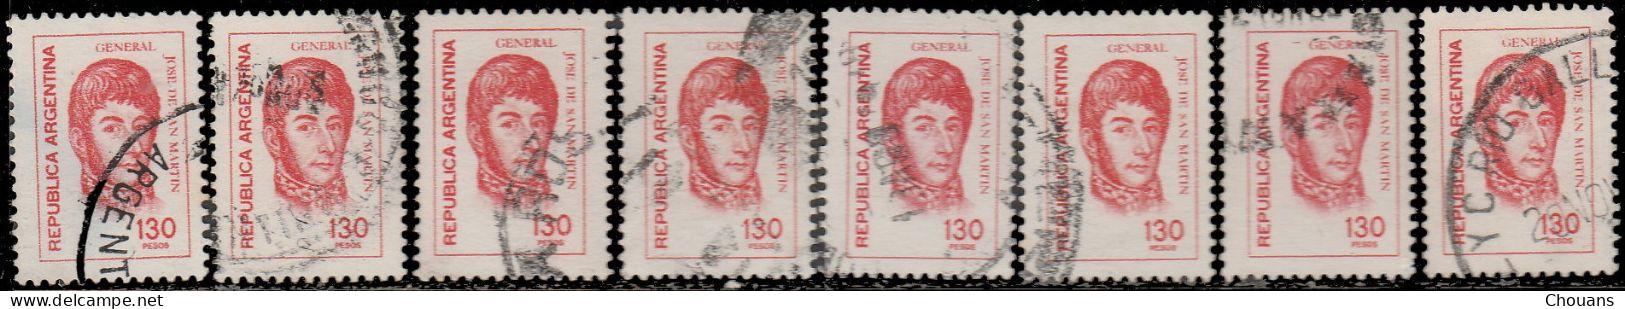 Argentine 1978. ~ YT 1128 +1129x4 +1130x9 + 1132x9 + 1133x2 + 1135 + 1136x9 + 1138x8  (43 V) - Used Stamps